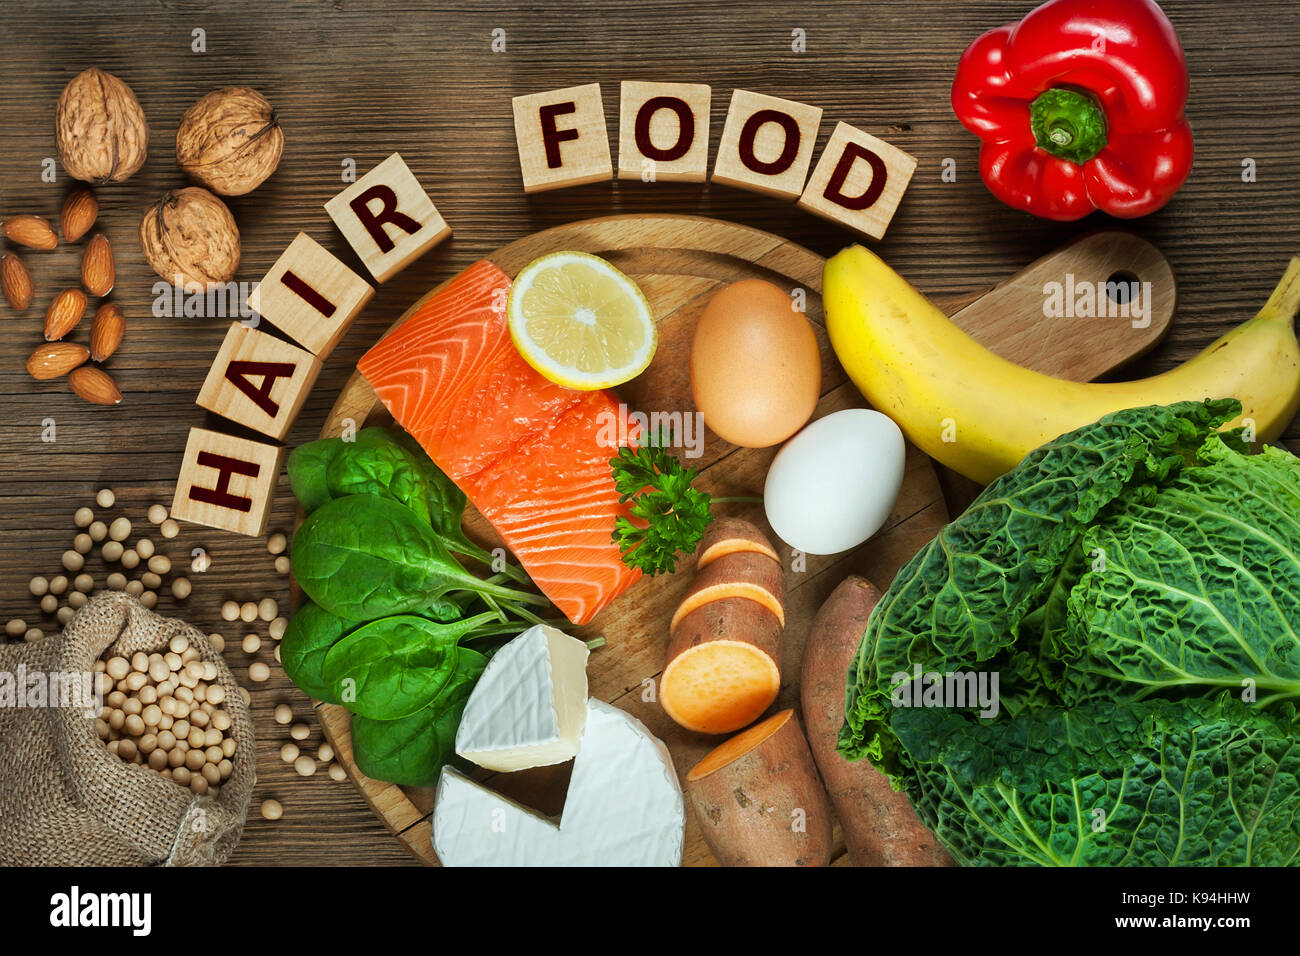 Gesundes Haar Konzept. Besten Lebensmittel für gesundes Haar wie Lachs, Spinat, Mandeln, süsse Kartoffeln, Eier, Nüsse, Kohl, Käse, Paprika, Bananen- und Stockfoto